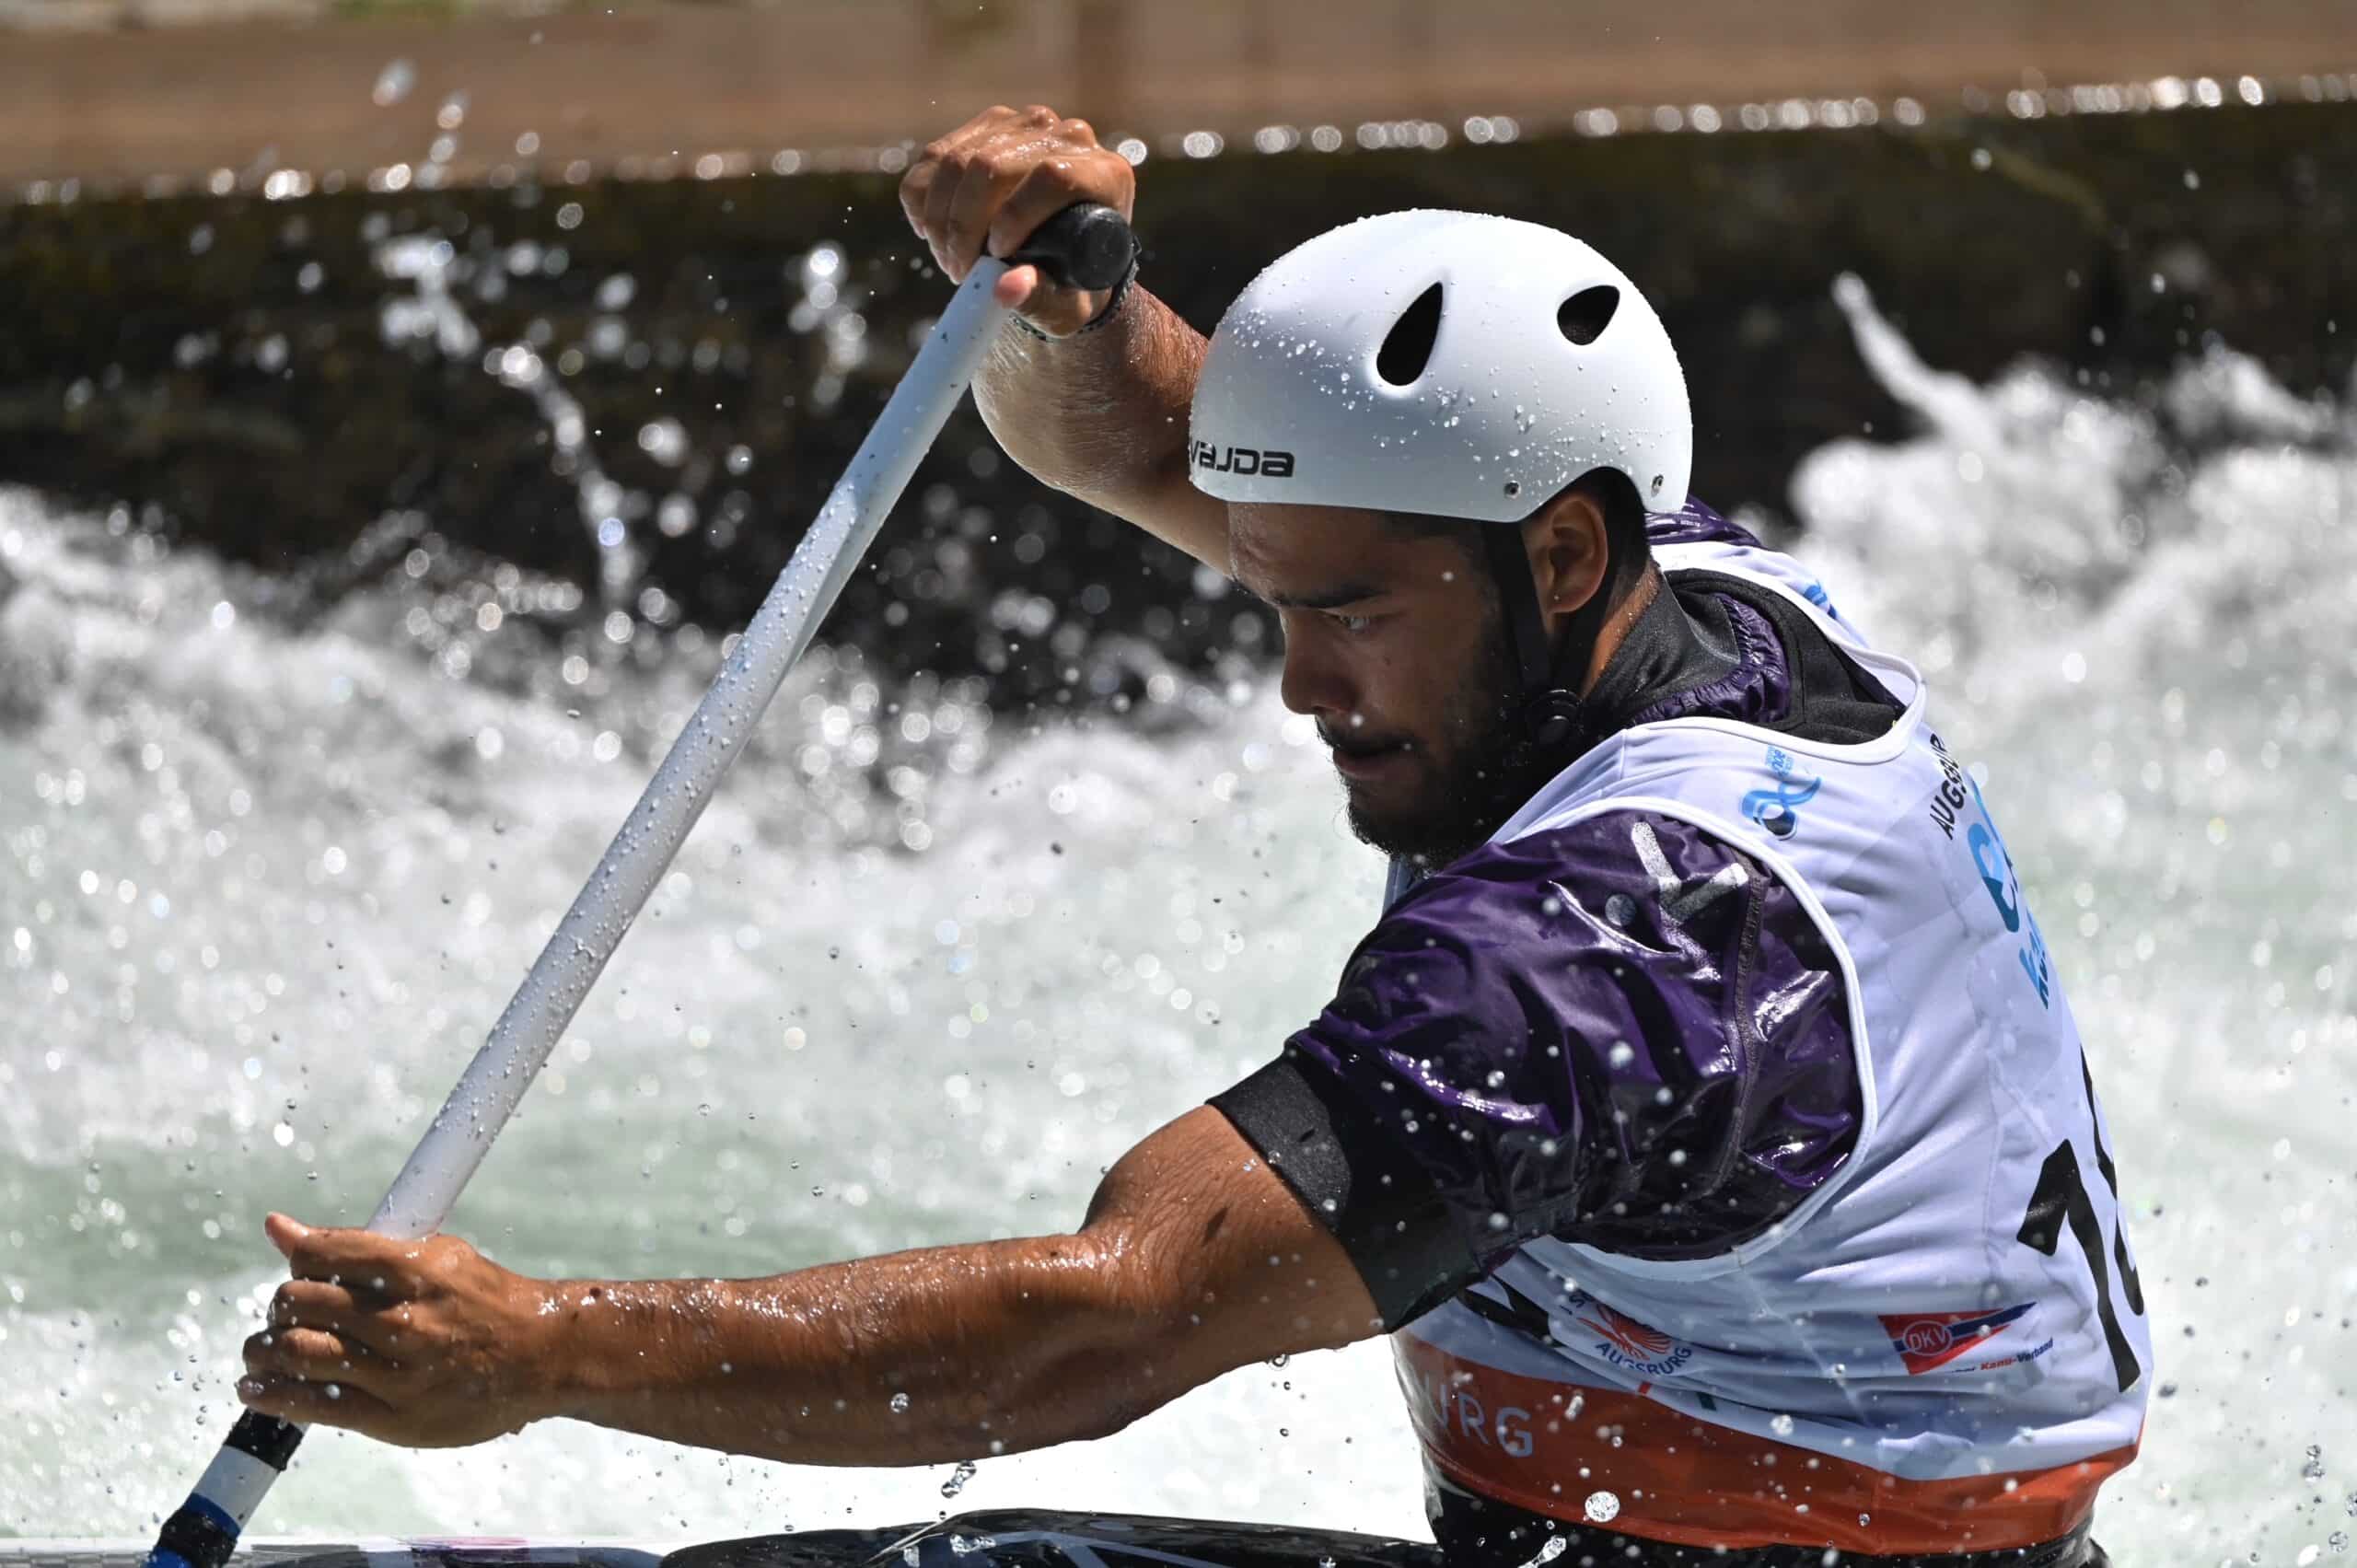 Terence Saramandif champion de canoé-kayak